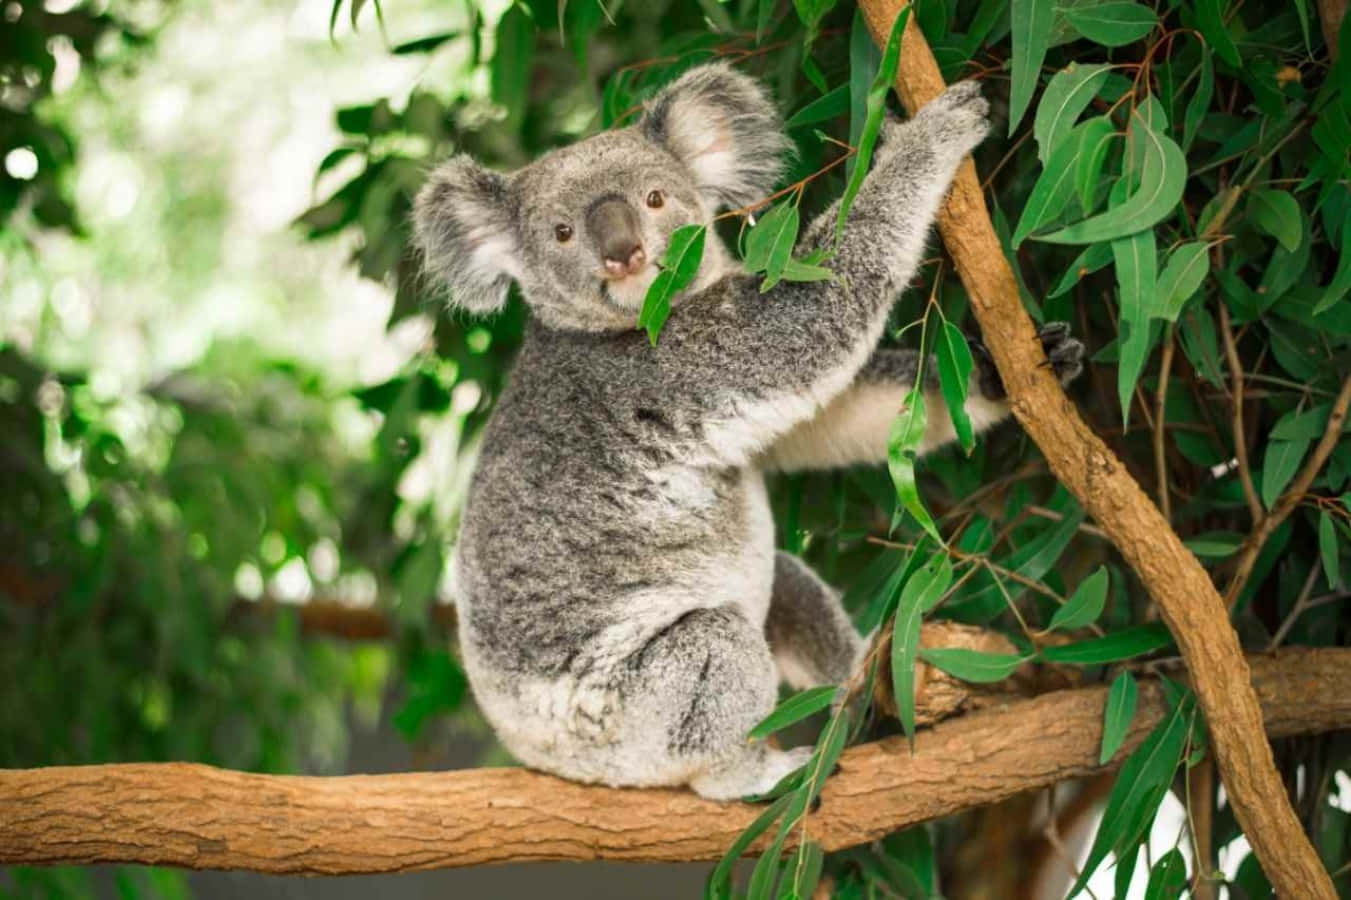 Adorable Koala Bear Hugging Its Cushion